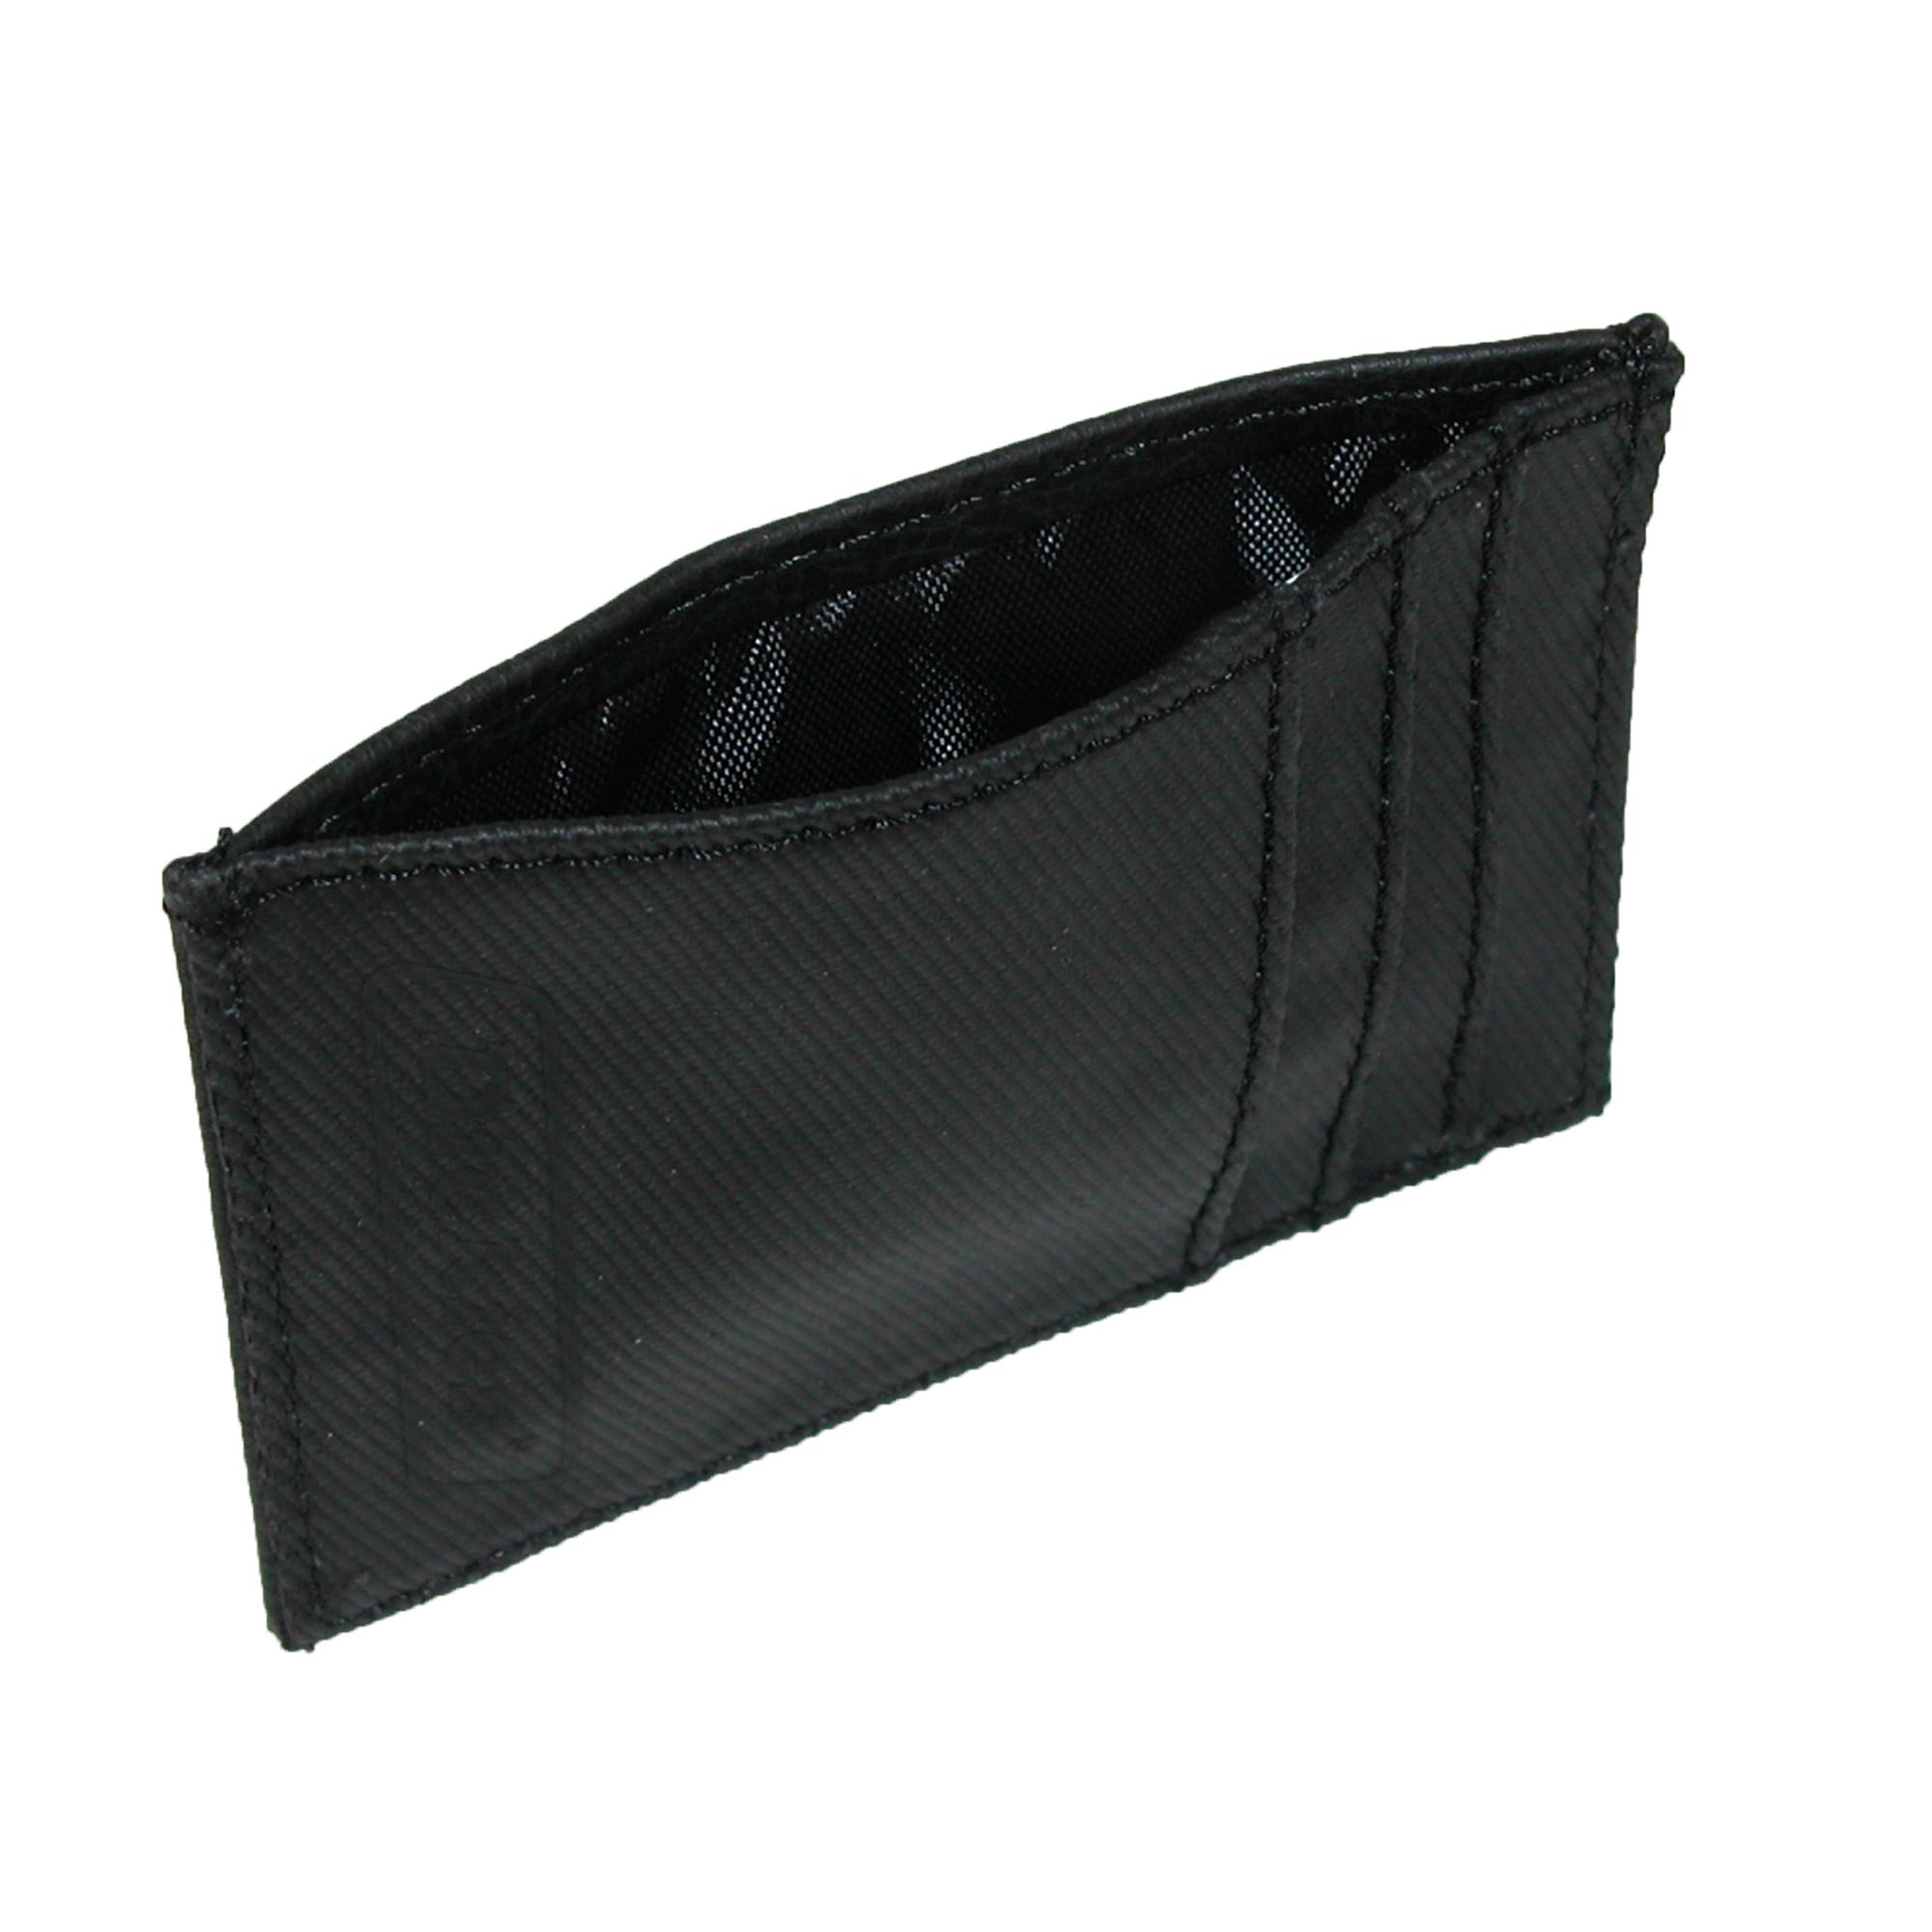 Dickies Men's Front Pocket Wallet with Metal Money Clip